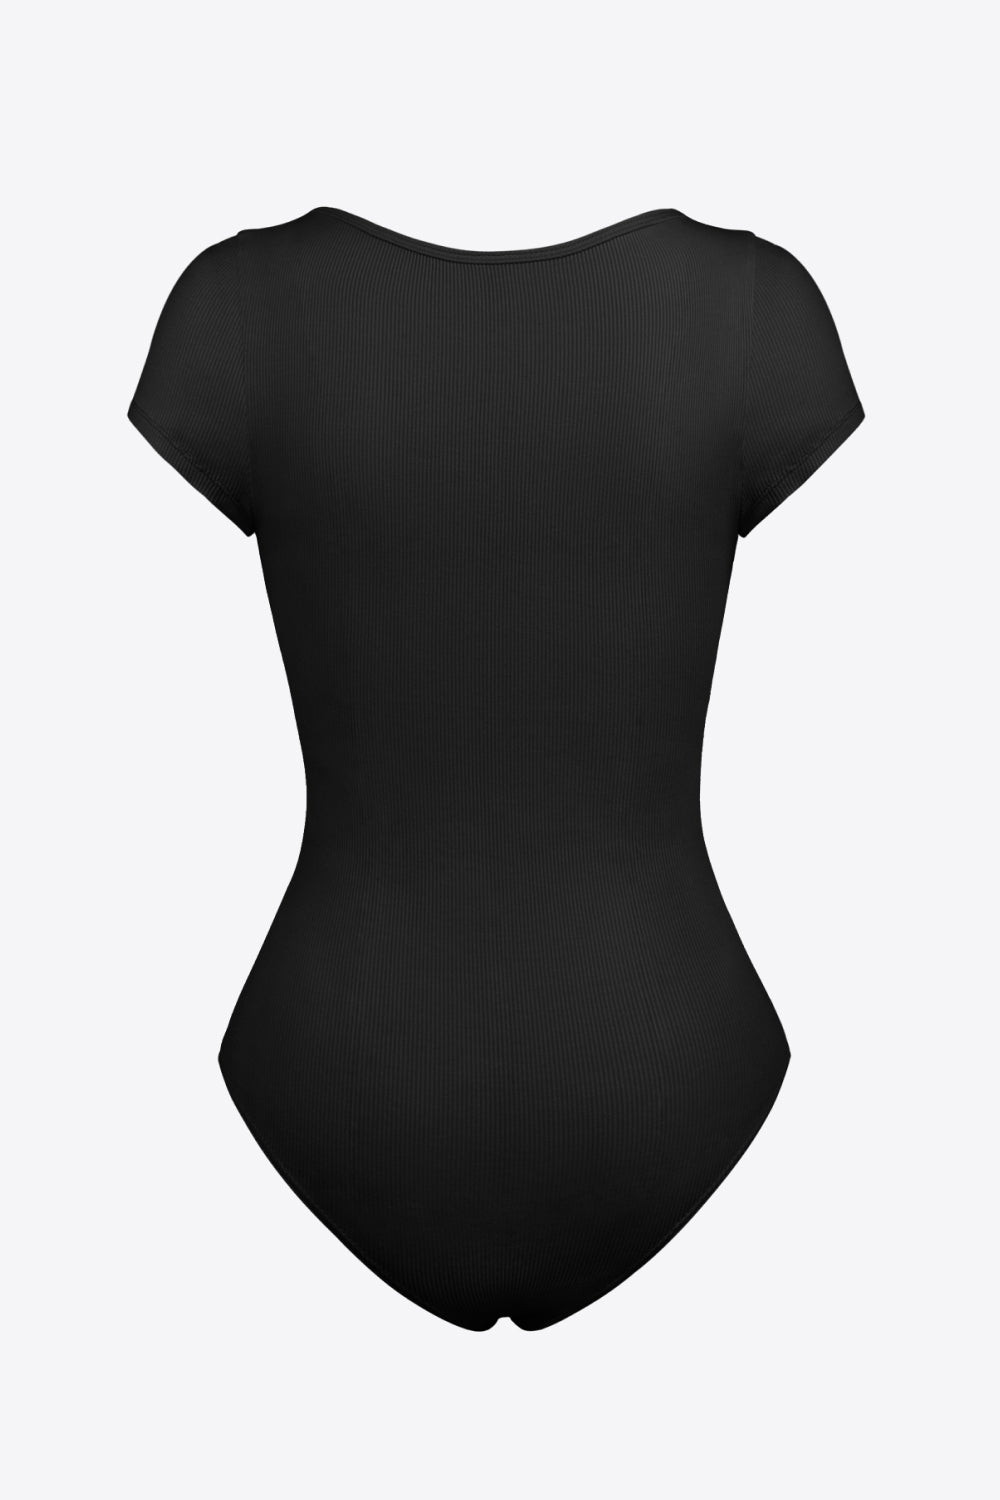 The Erin Short Sleeve Bodysuit